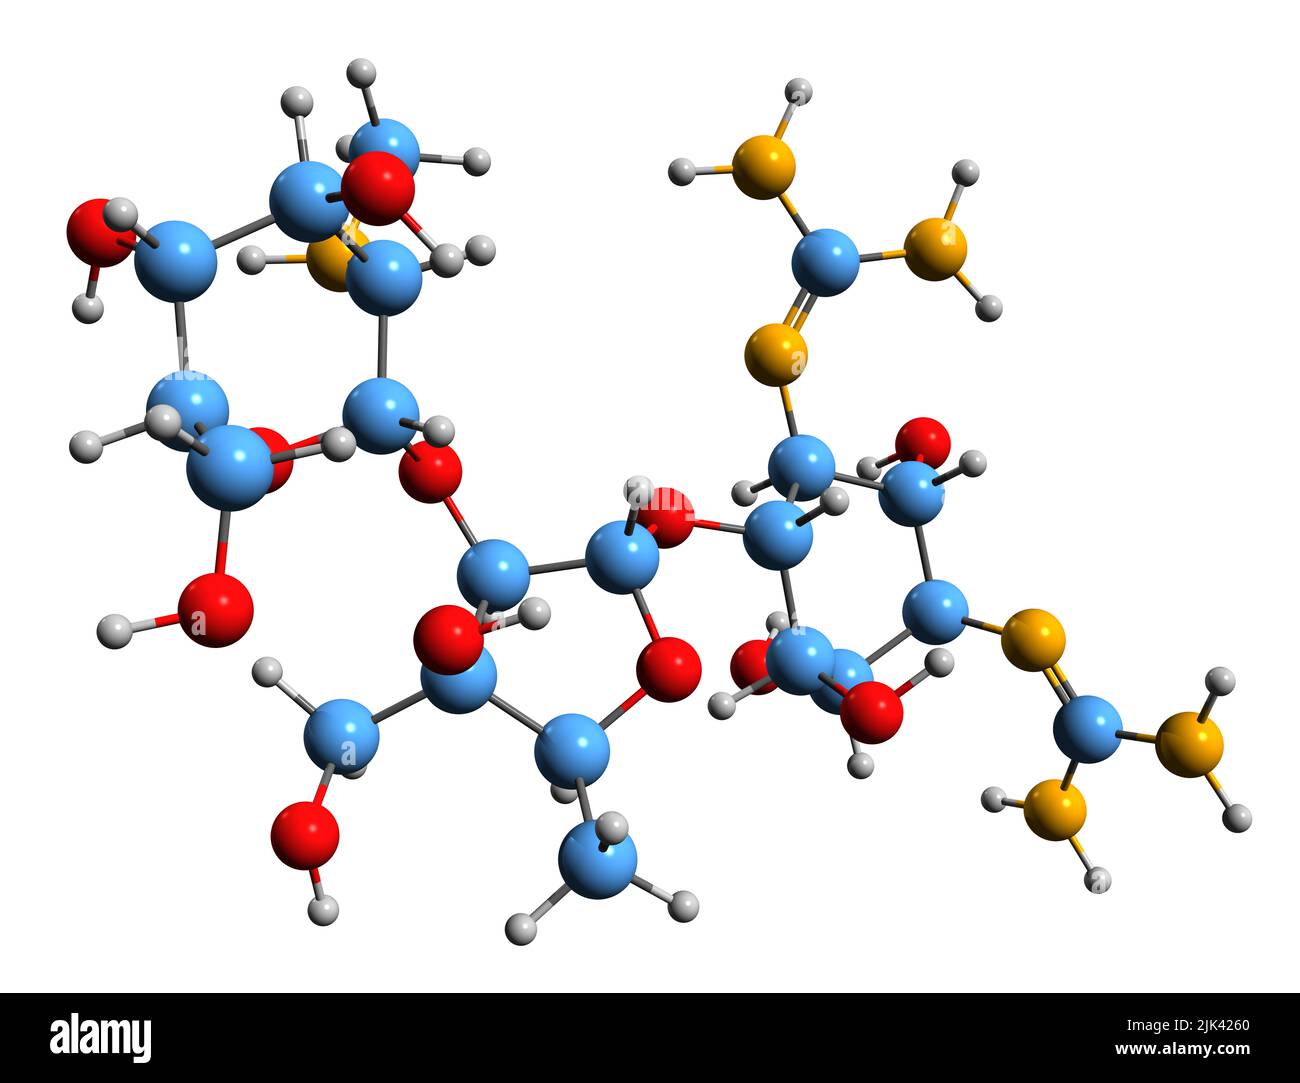 3D Bild der Skelettformel von Dihydrostreptomycin - molekularchemische Struktur des auf weißem Hintergrund isolierten Derivats von Streptomycin Stockfoto